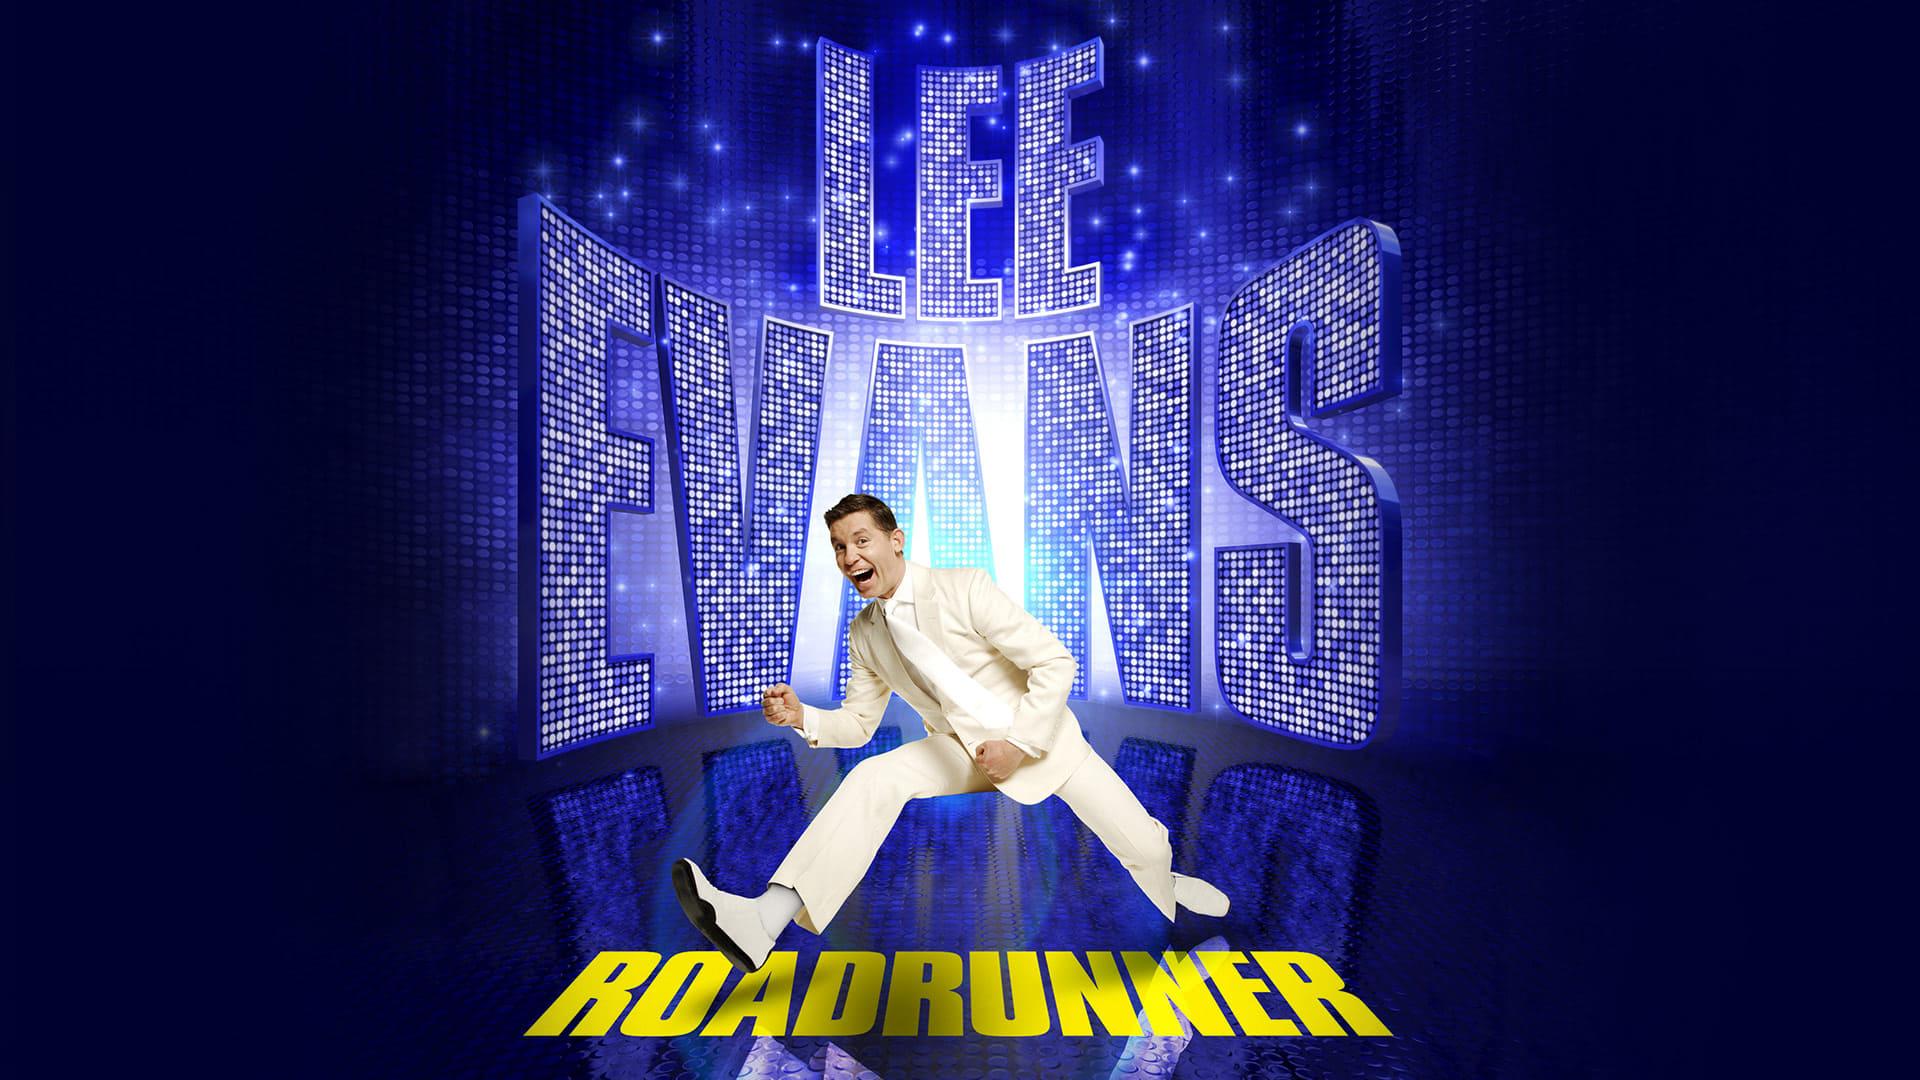 Lee Evans: Roadrunner backdrop